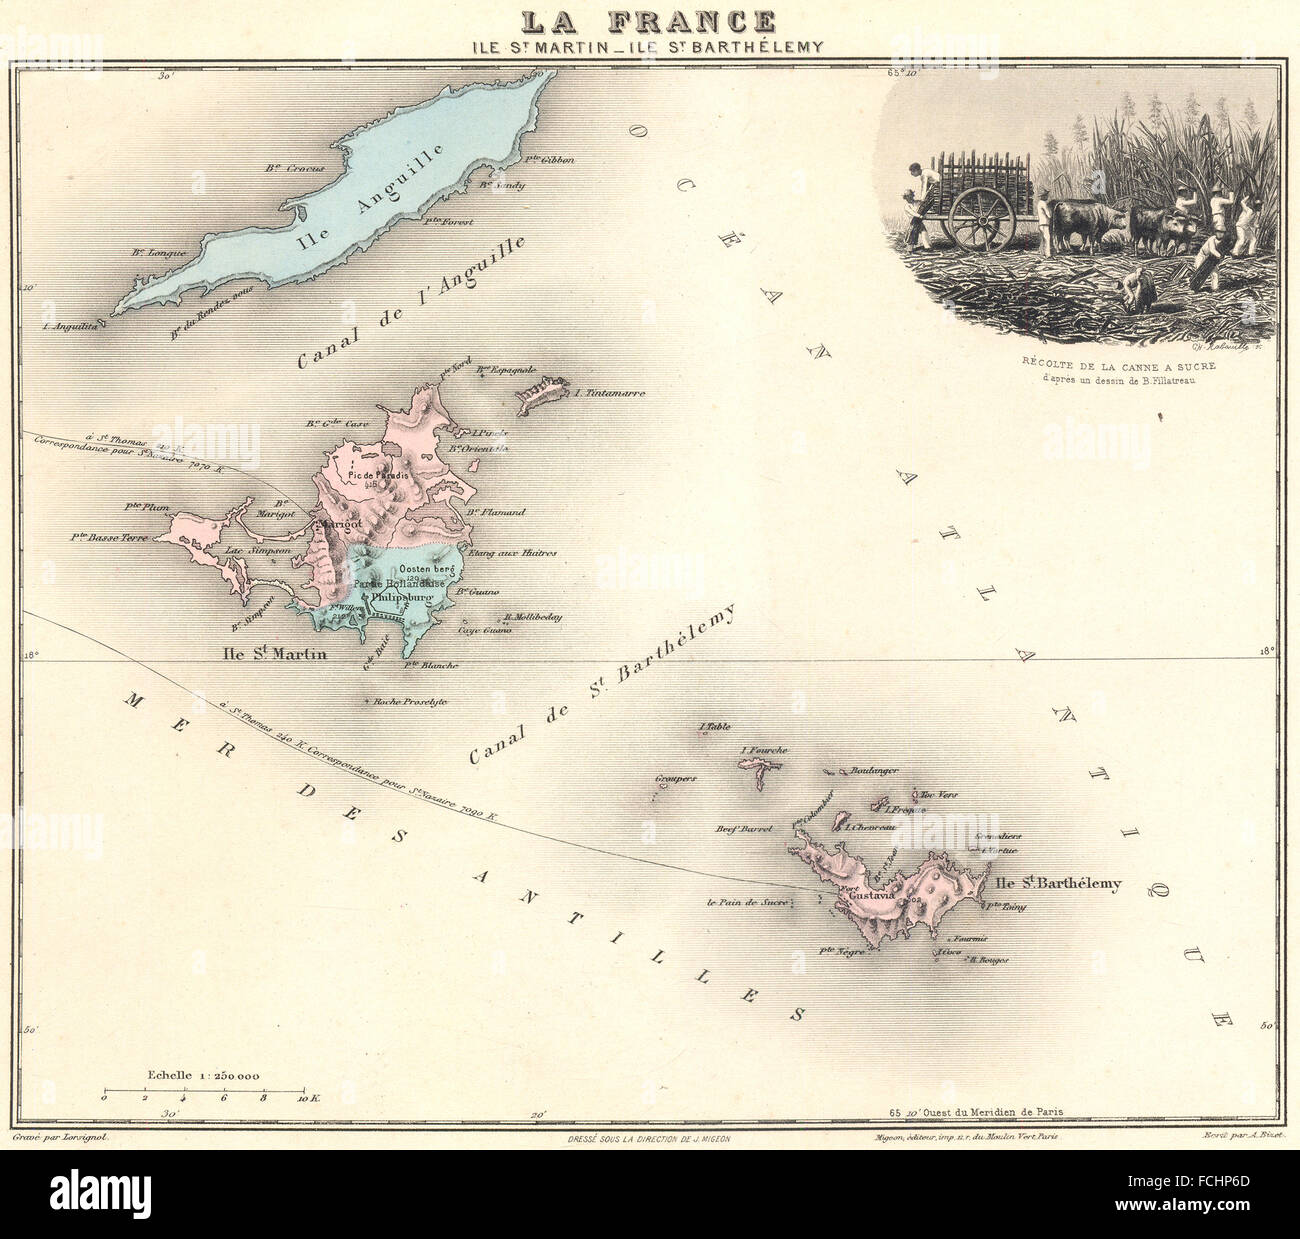 WEST INDIES: Ile St Martin-Ile St Barthélemy.Canne a Sucre. Vuillemin, 1903 map Stock Photo